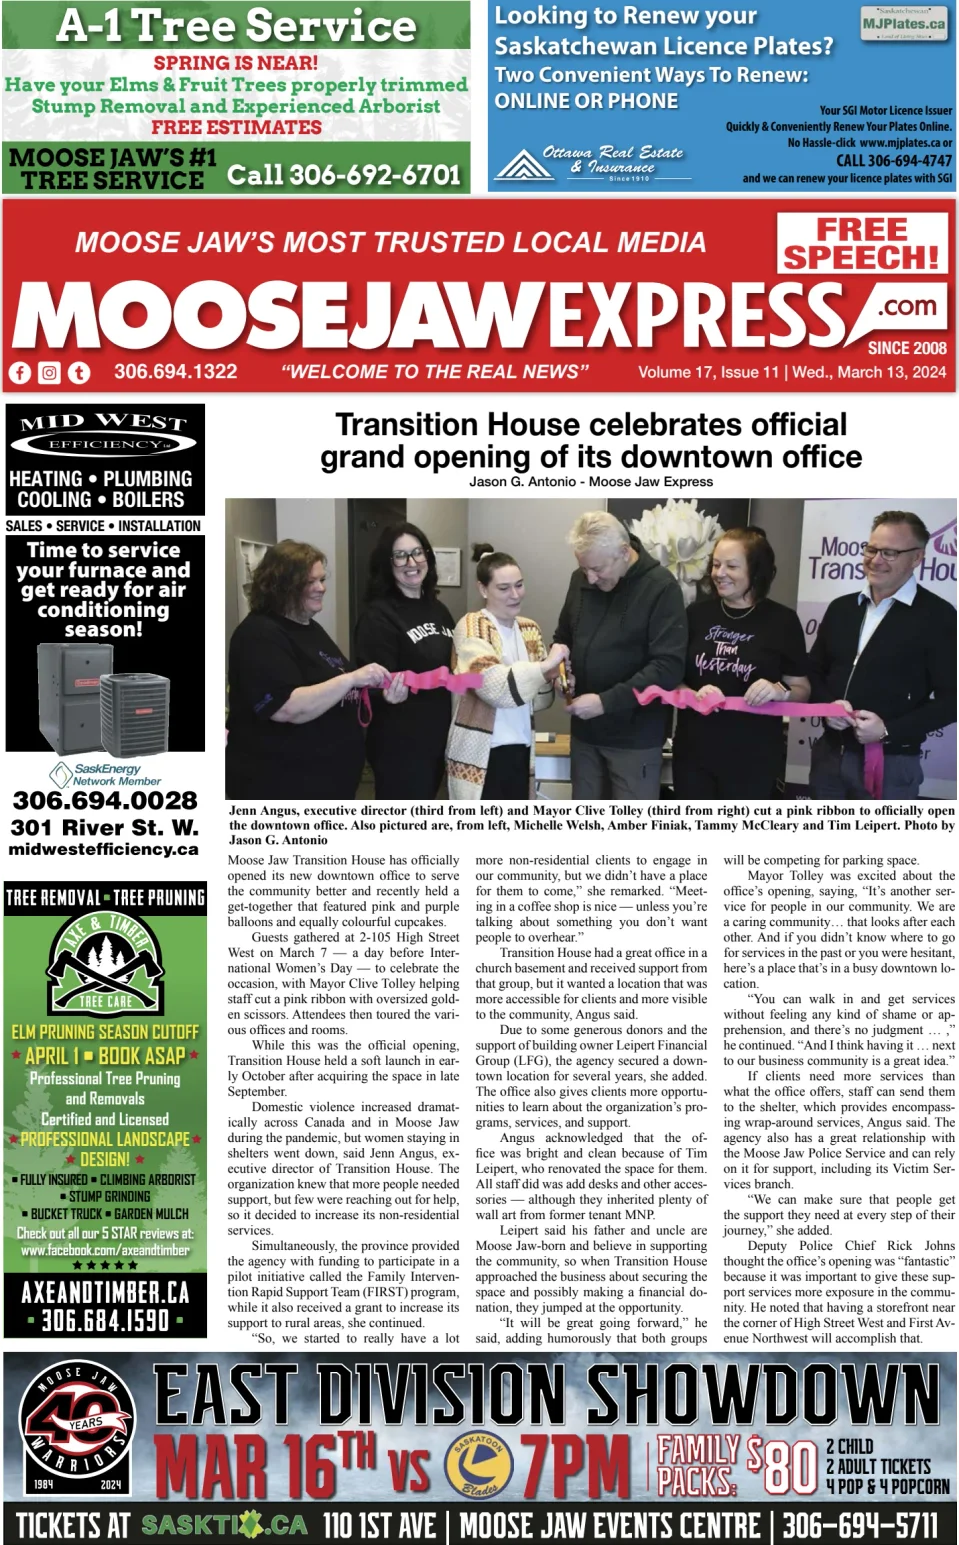 Moose Jaw Express.com